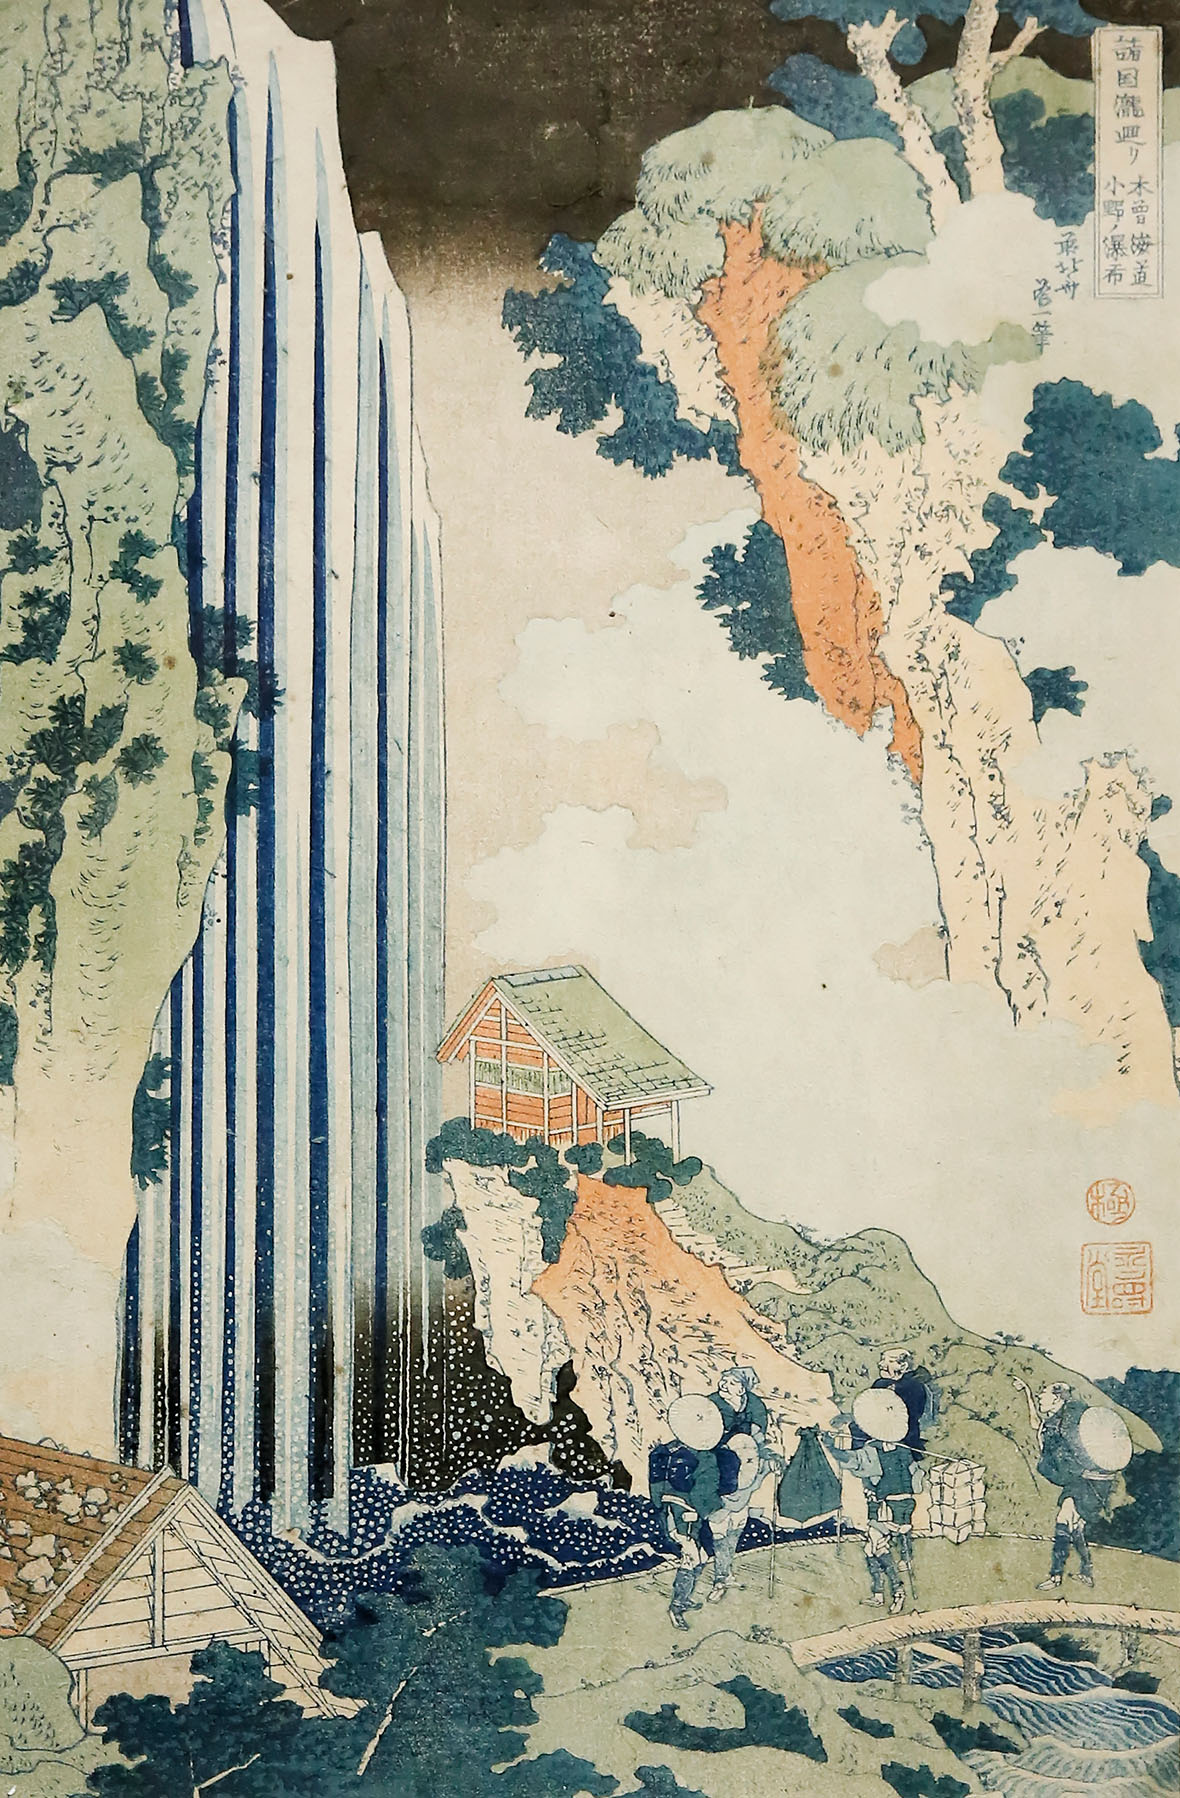 Ono Waterfalls by Hiroshige